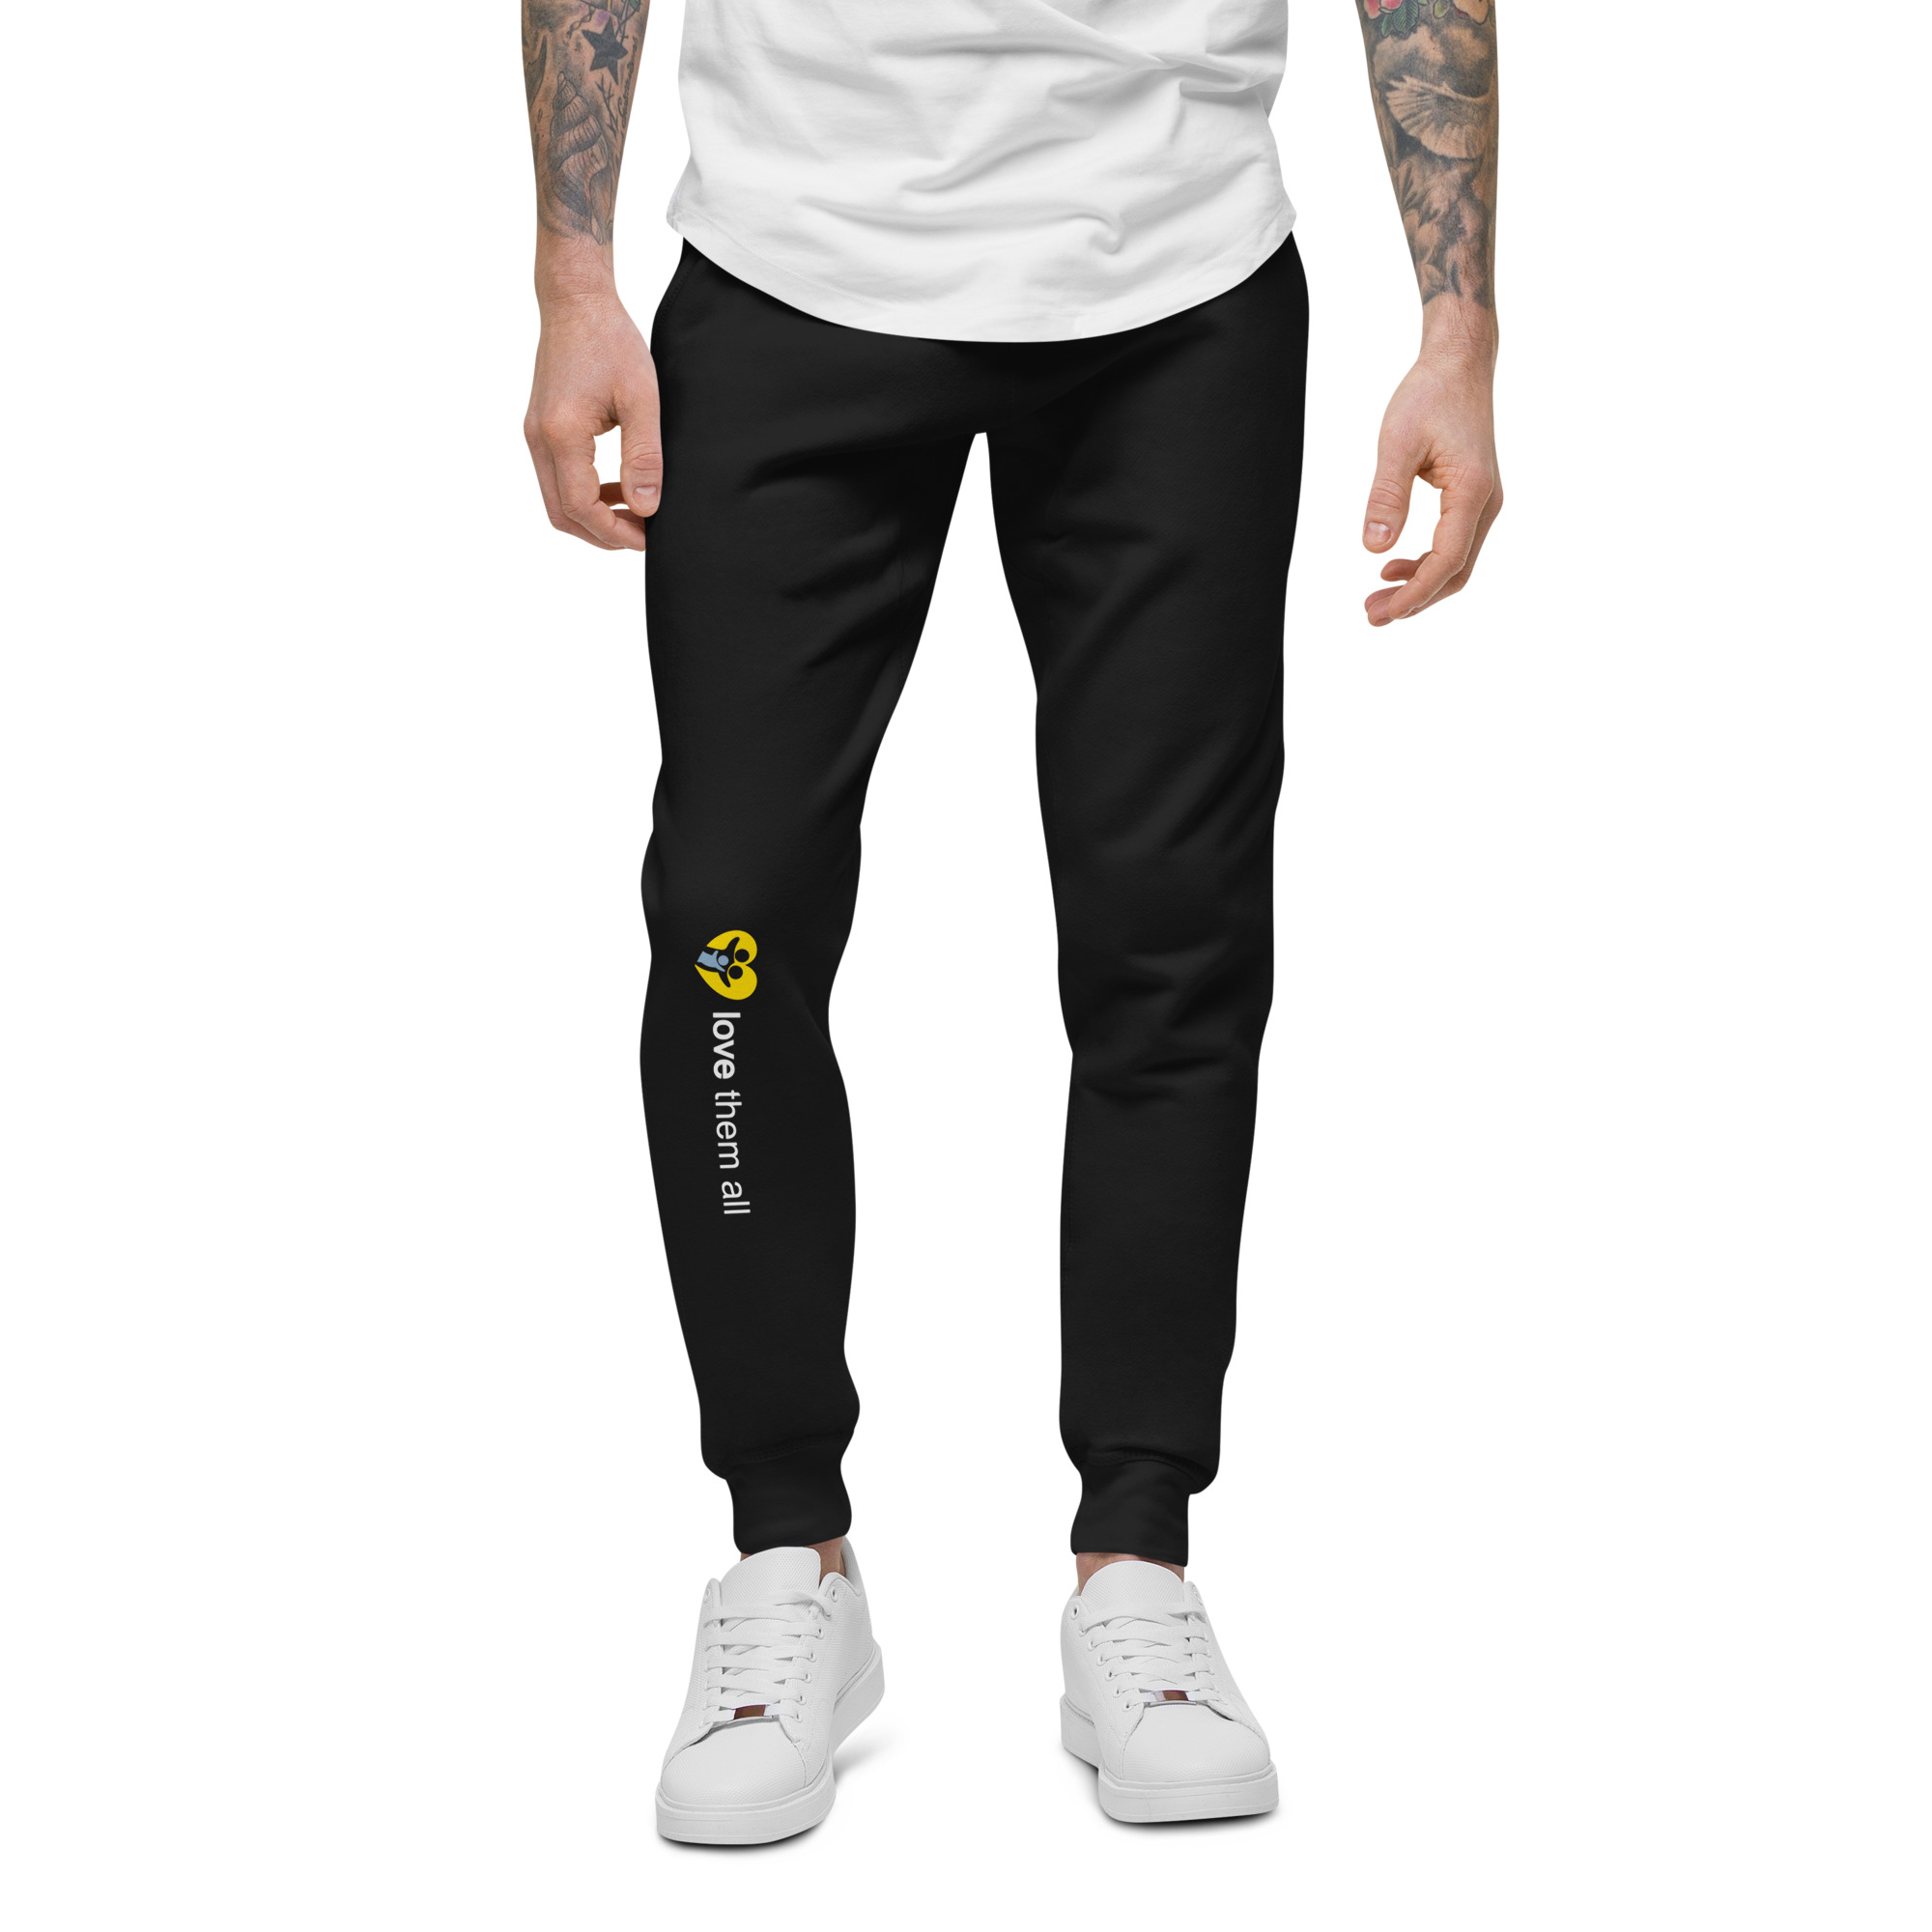 Unisex fleece sweatpants (Logo on leg)